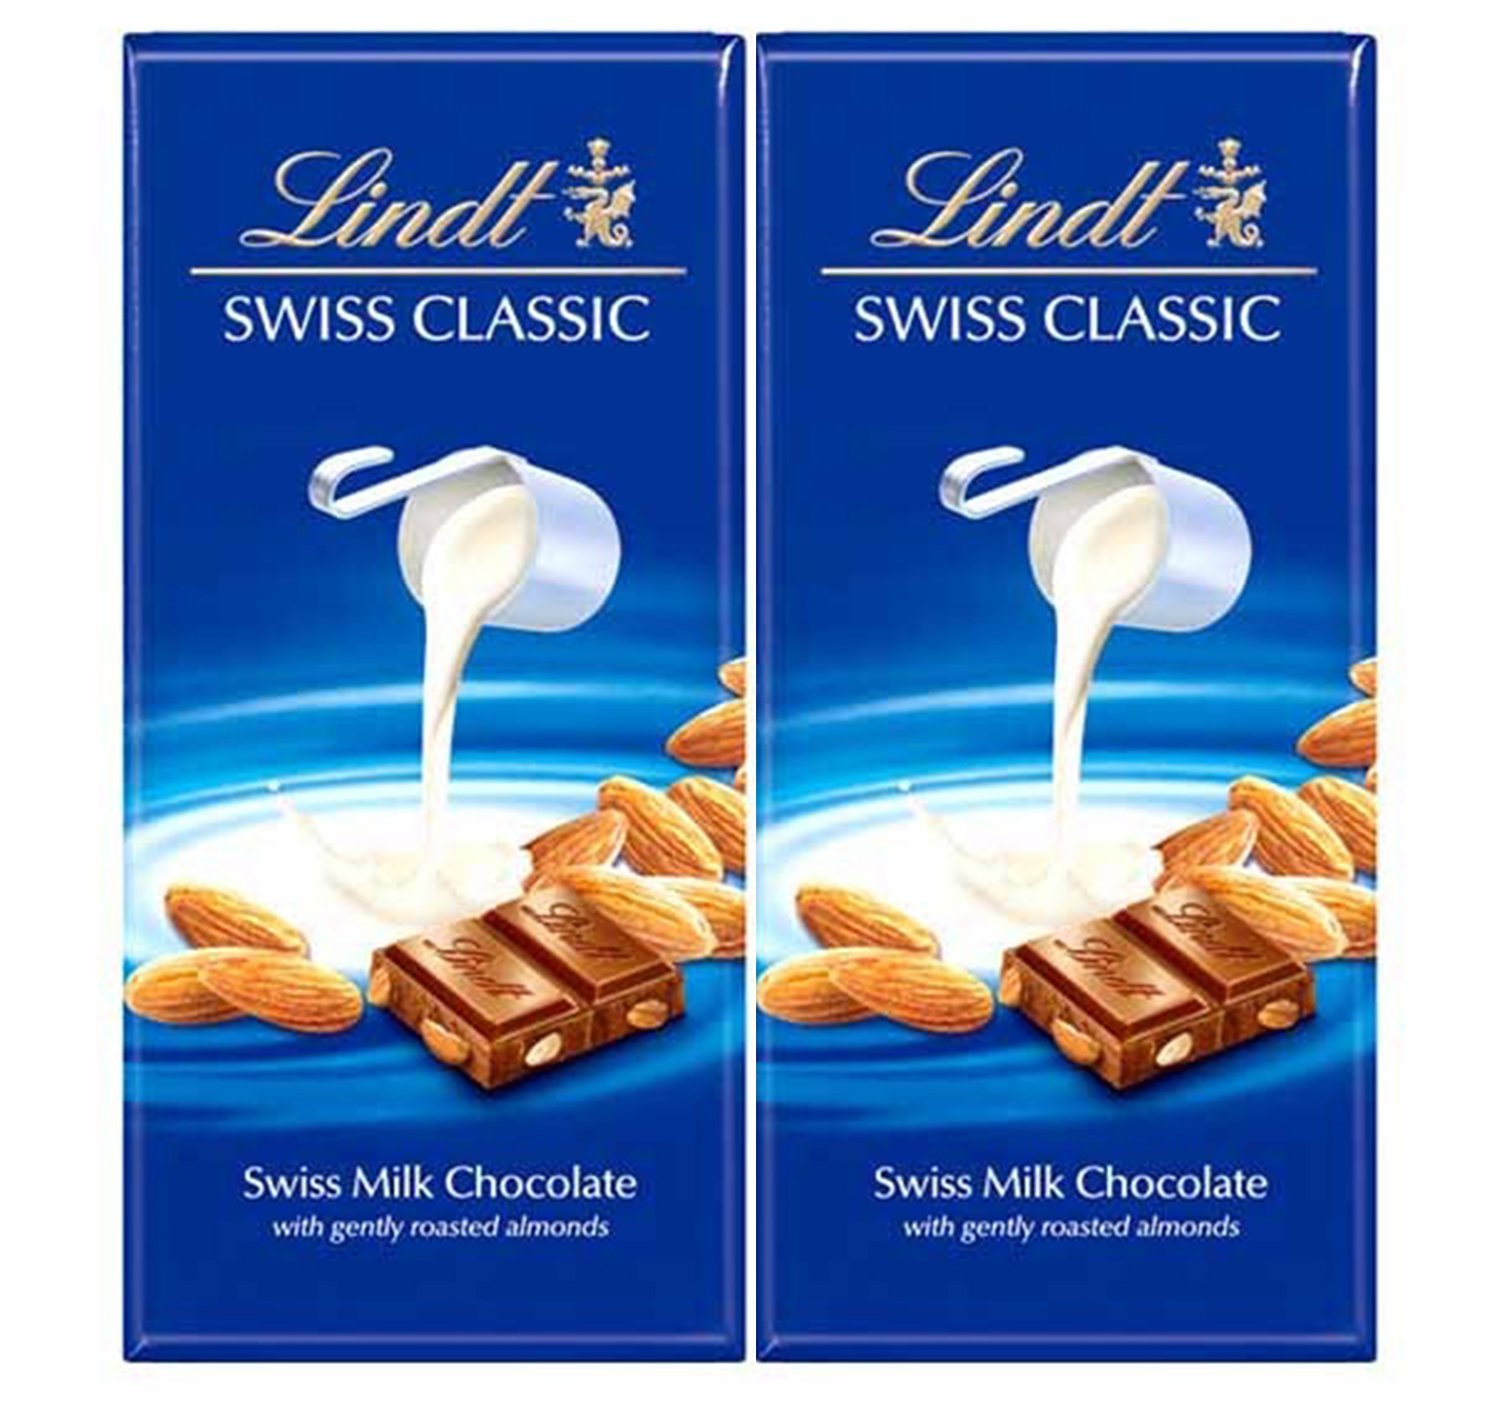 Swiss classic. Lindt Swiss Classic. Шоколад Lindt Classic. Lindt Swiss Premium Chocolate. Шоколад Линдт ассортимент.